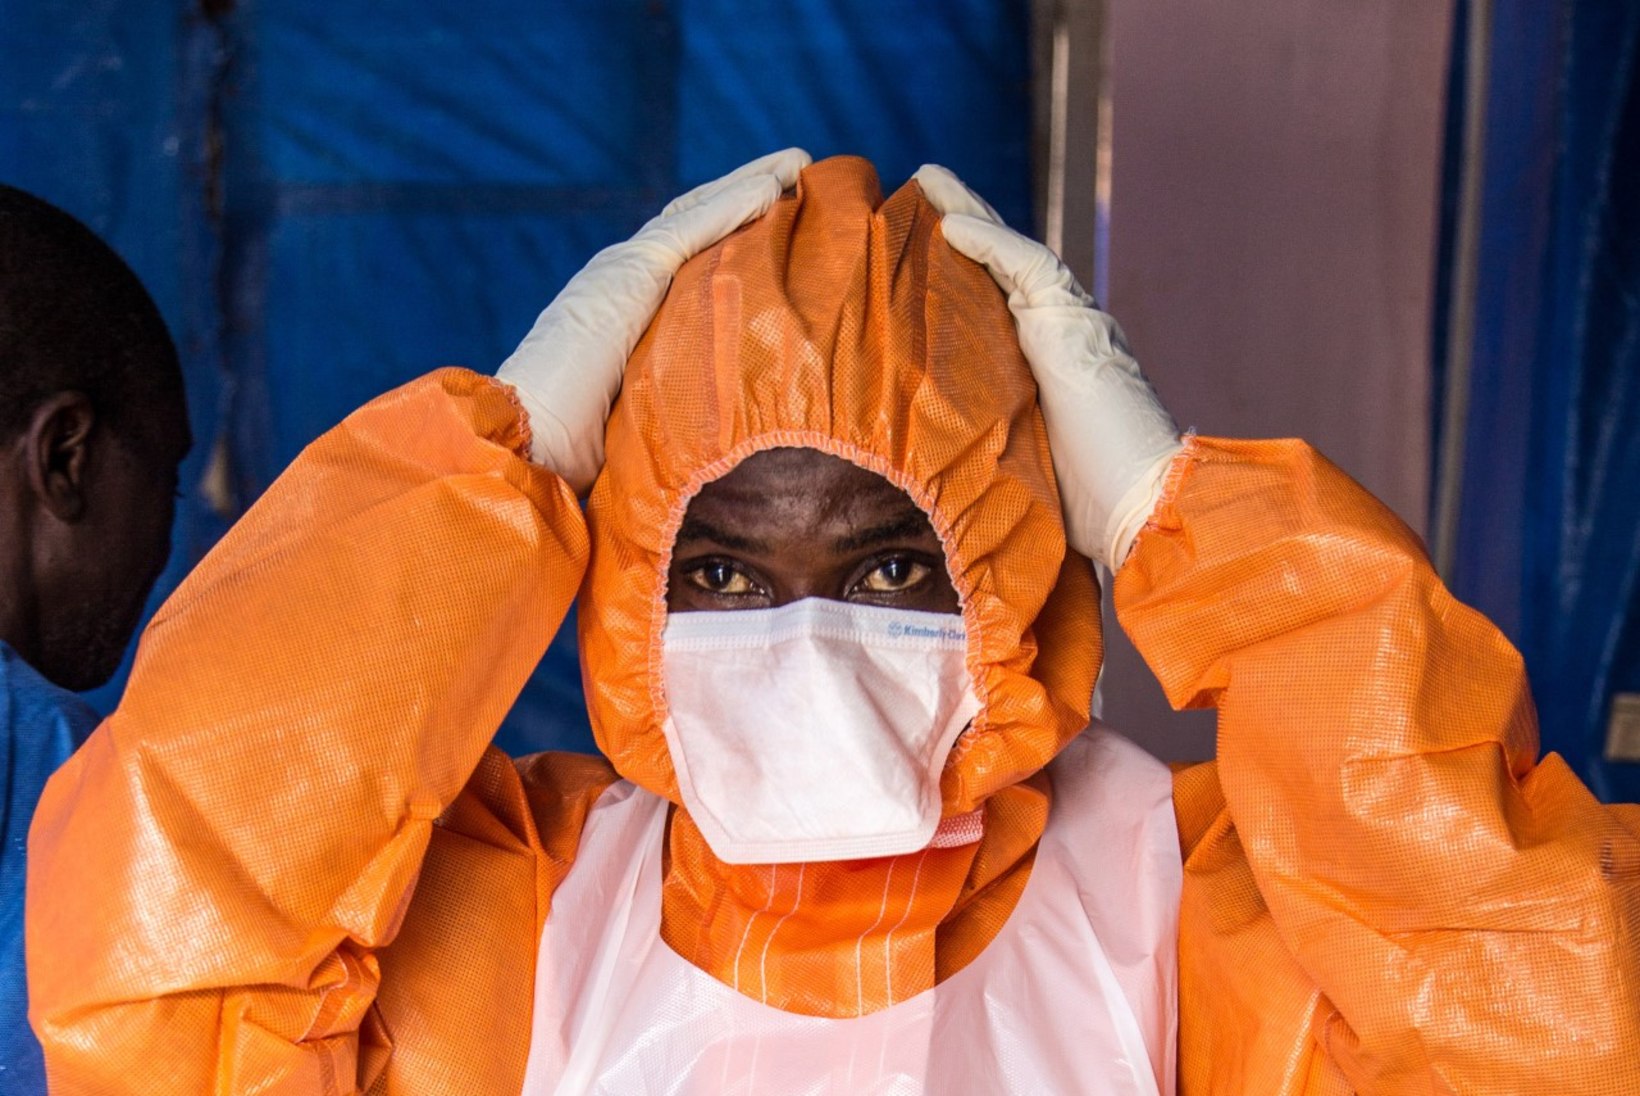 Eesti firma hakkab koostöös soomlastega välja töötama Ebola viiruse ravimit